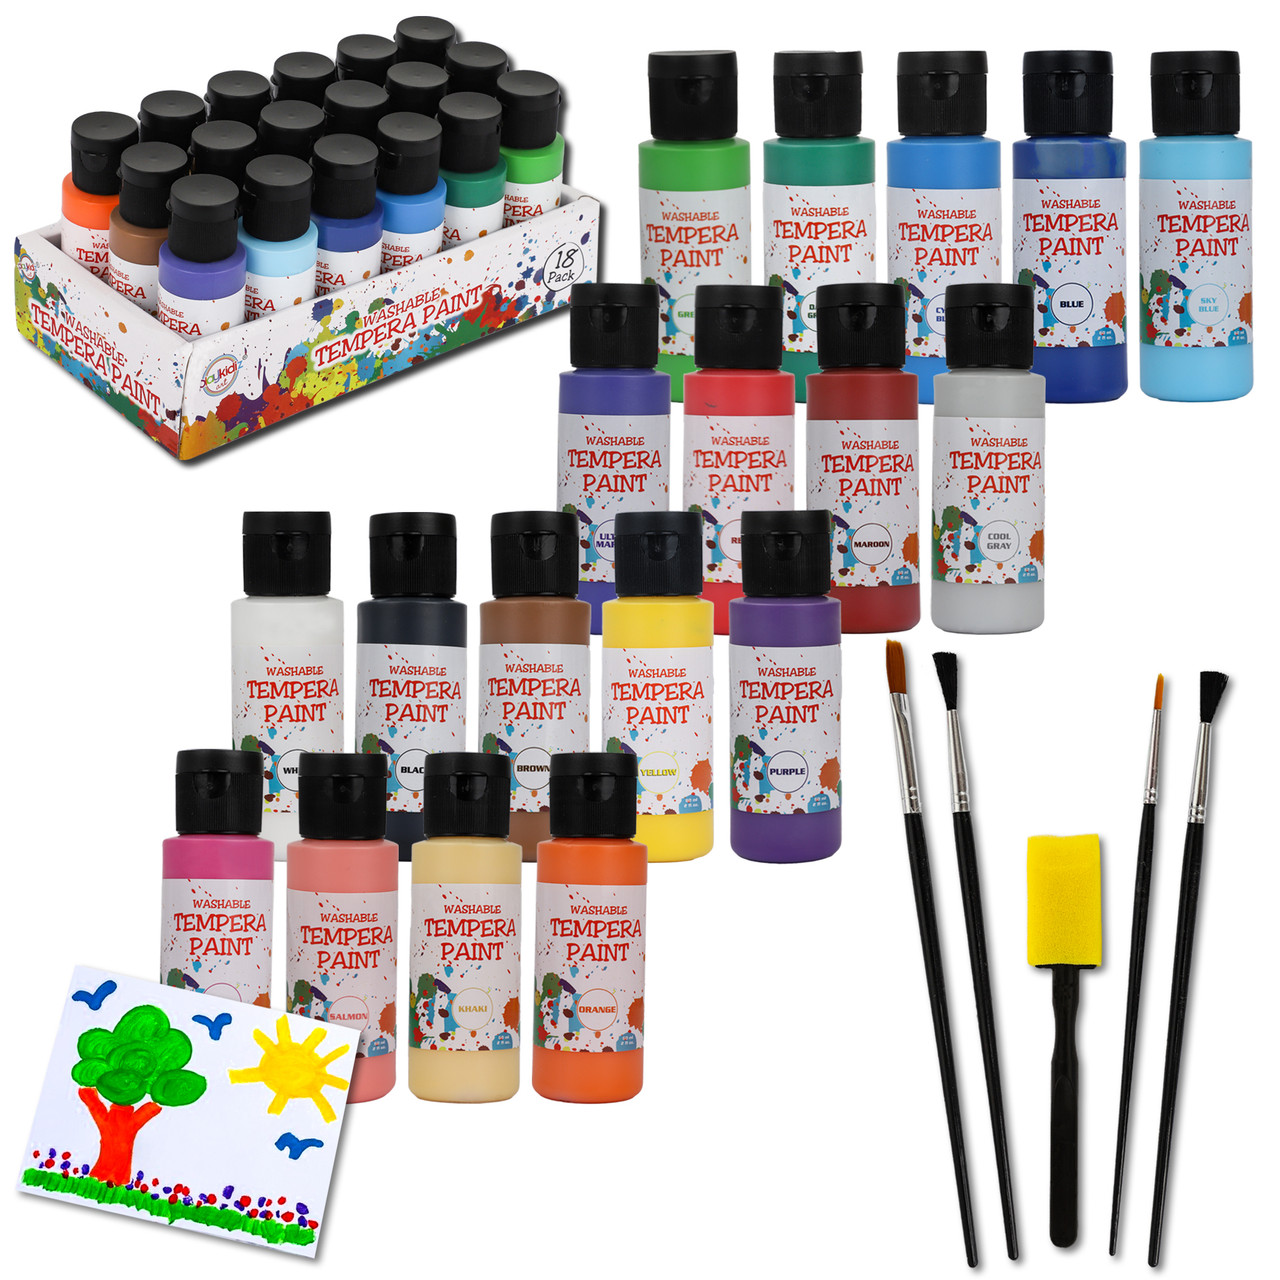  Watercolor Paint Set - Includes 24 Watercolor Paint, 8 Paint  Brushes for Kids - Ultimate Washable Paint Watercolor Supplies Set - Water  Color Painting Kids, 9 Piece Set : Toys & Games